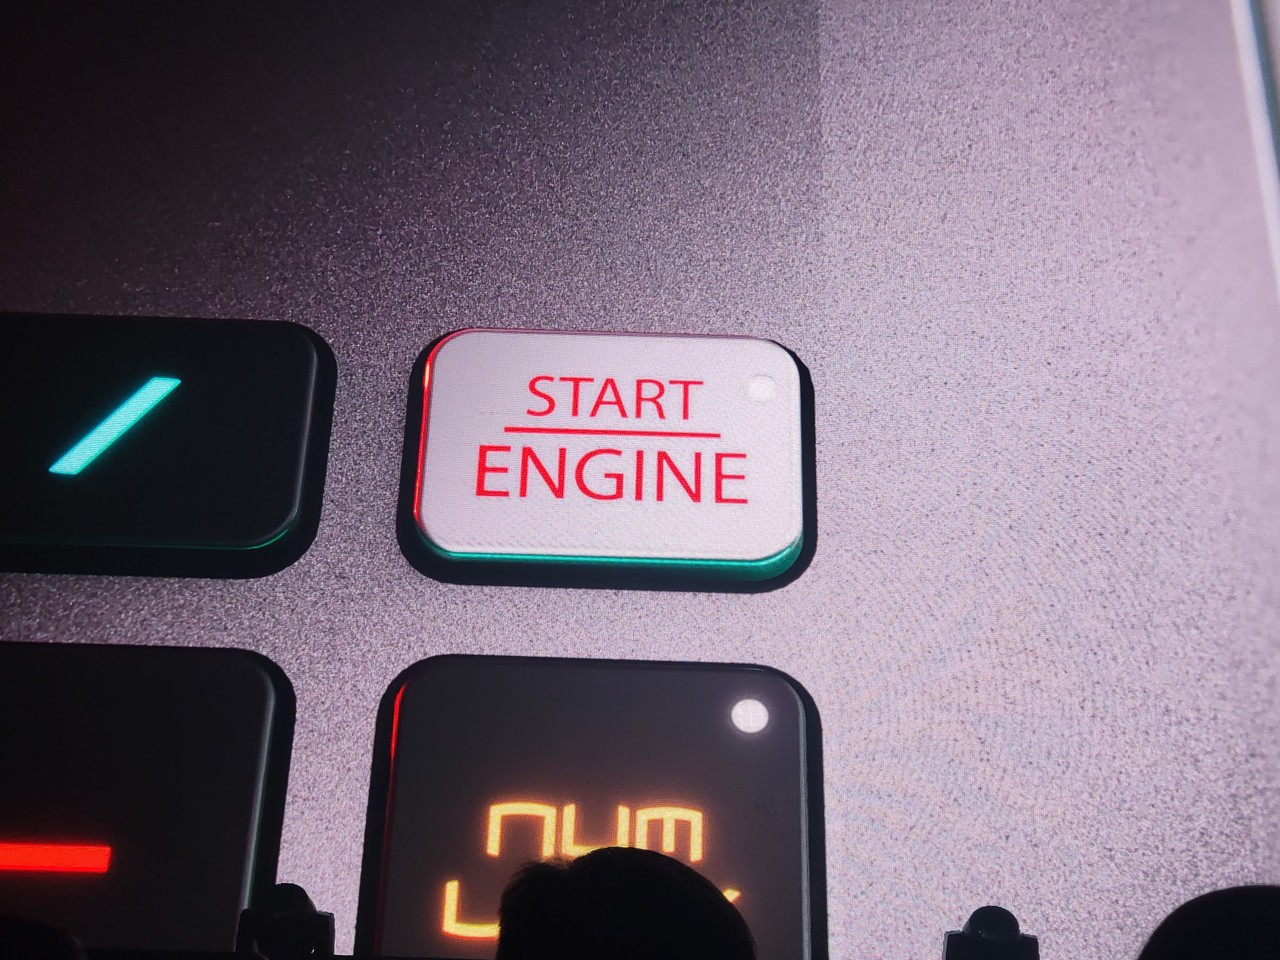 ▲ 전원 버튼이 엔진 스타트로 변경된다.